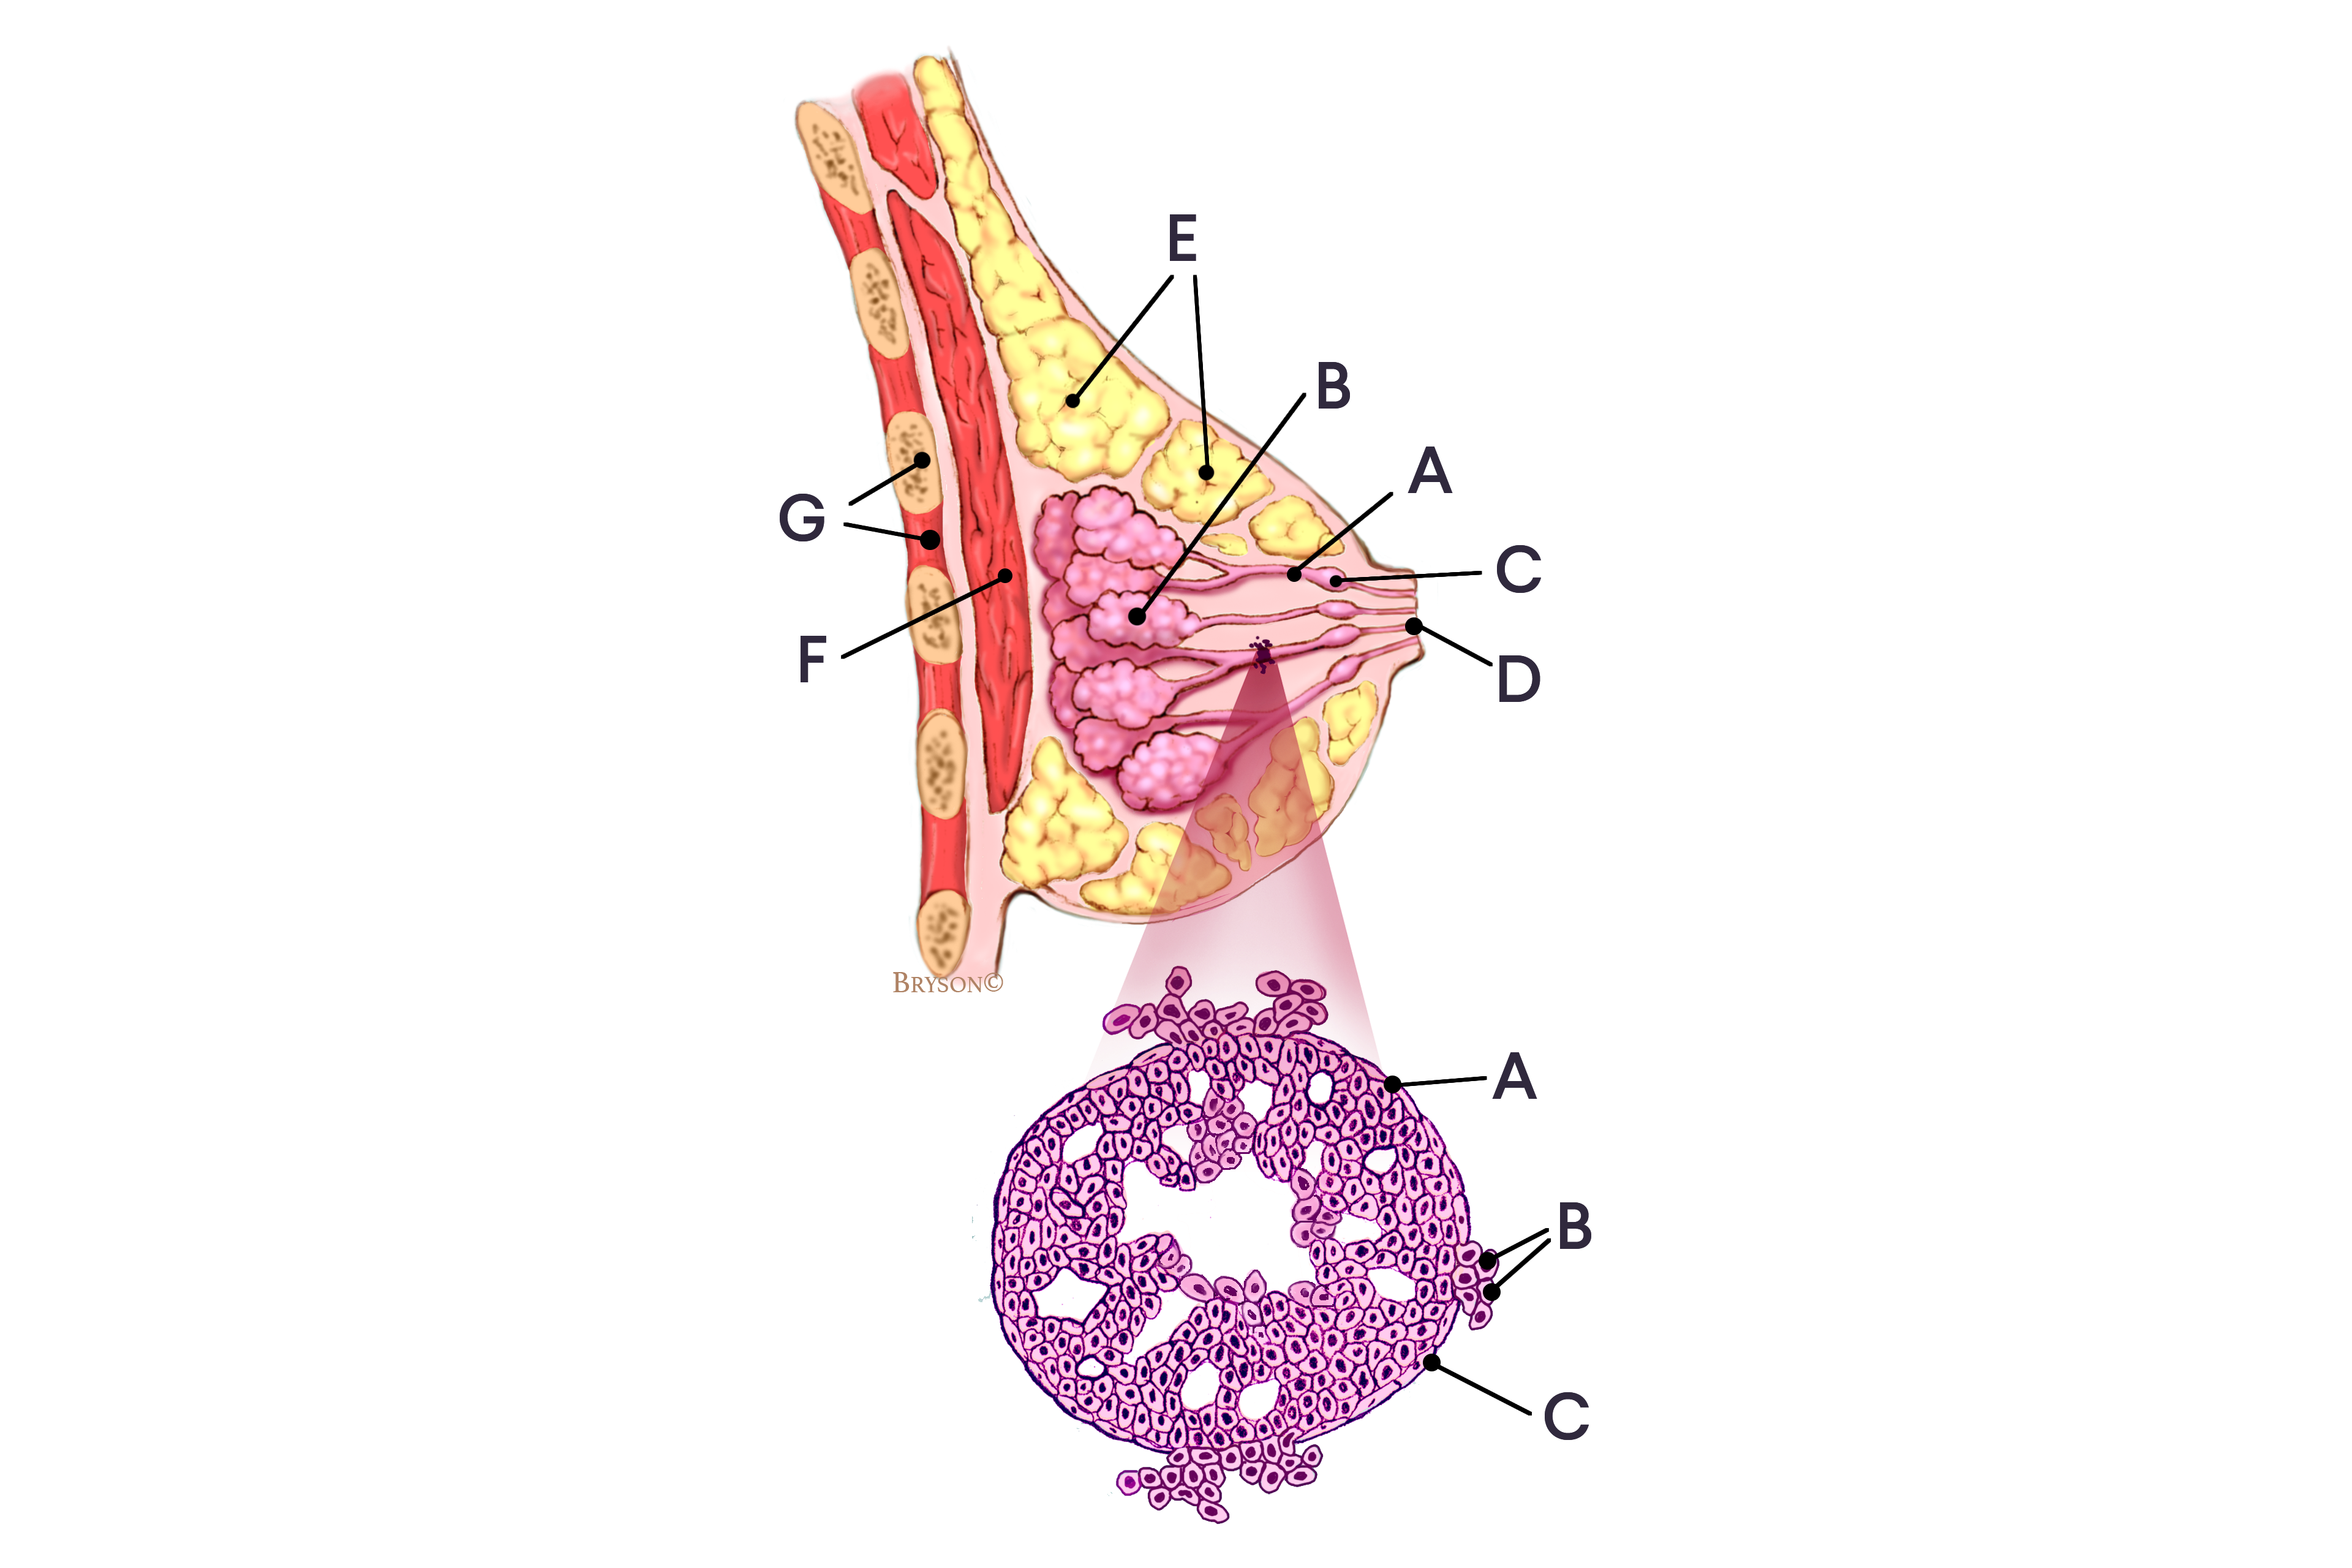 Invasive ductal carcinoma diagram